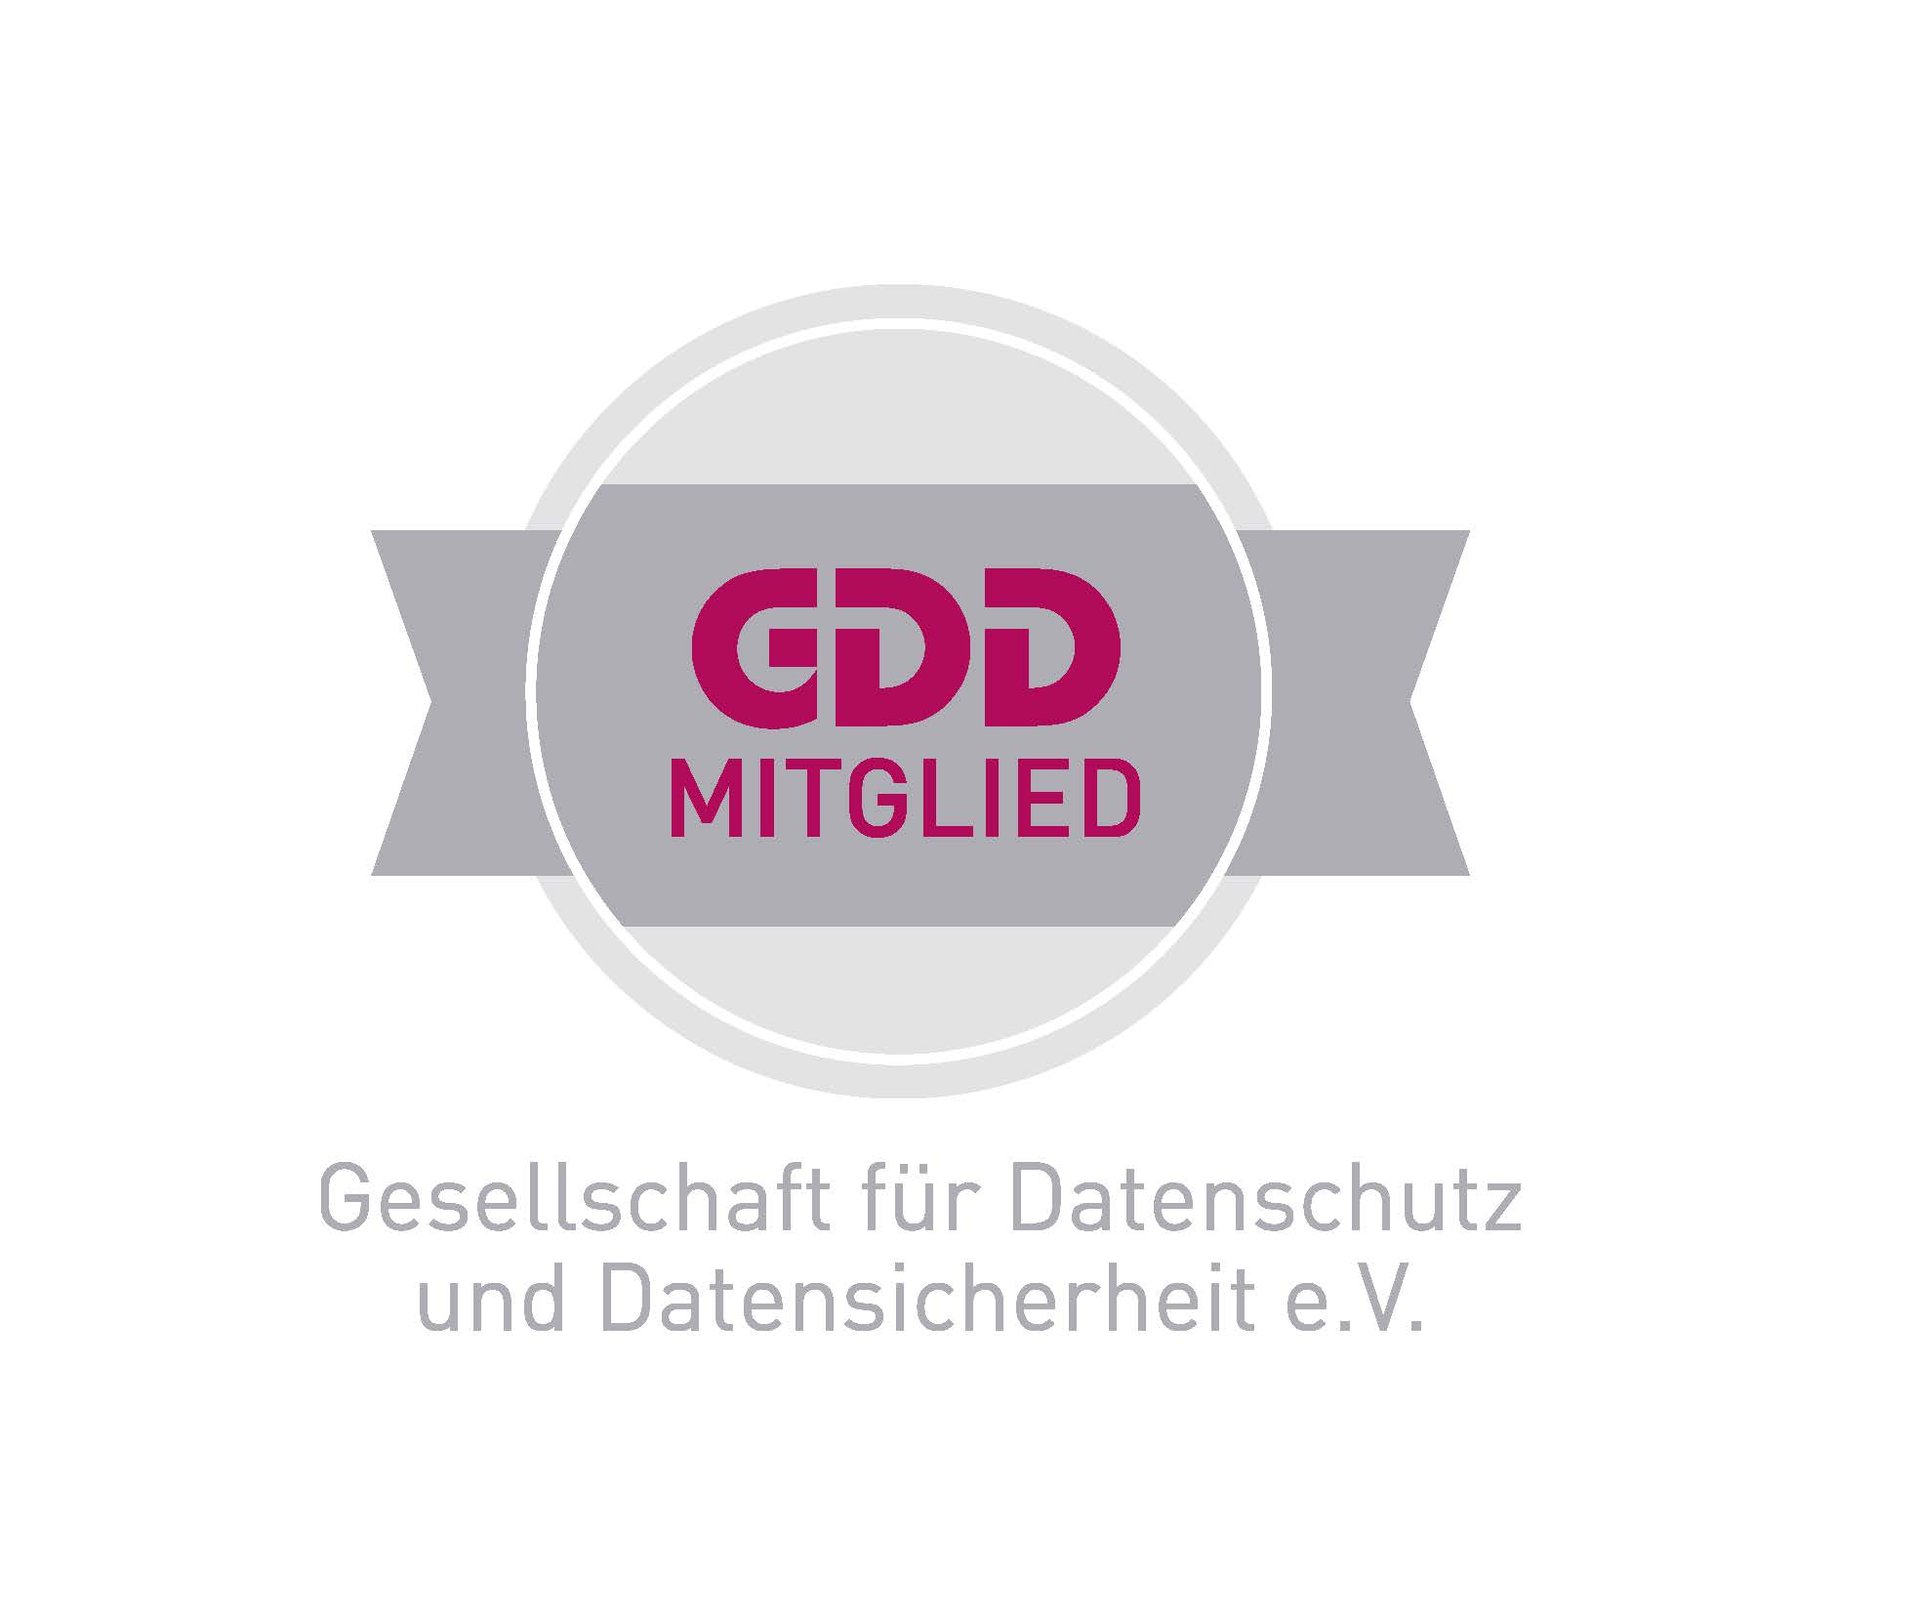 www.gdd.de